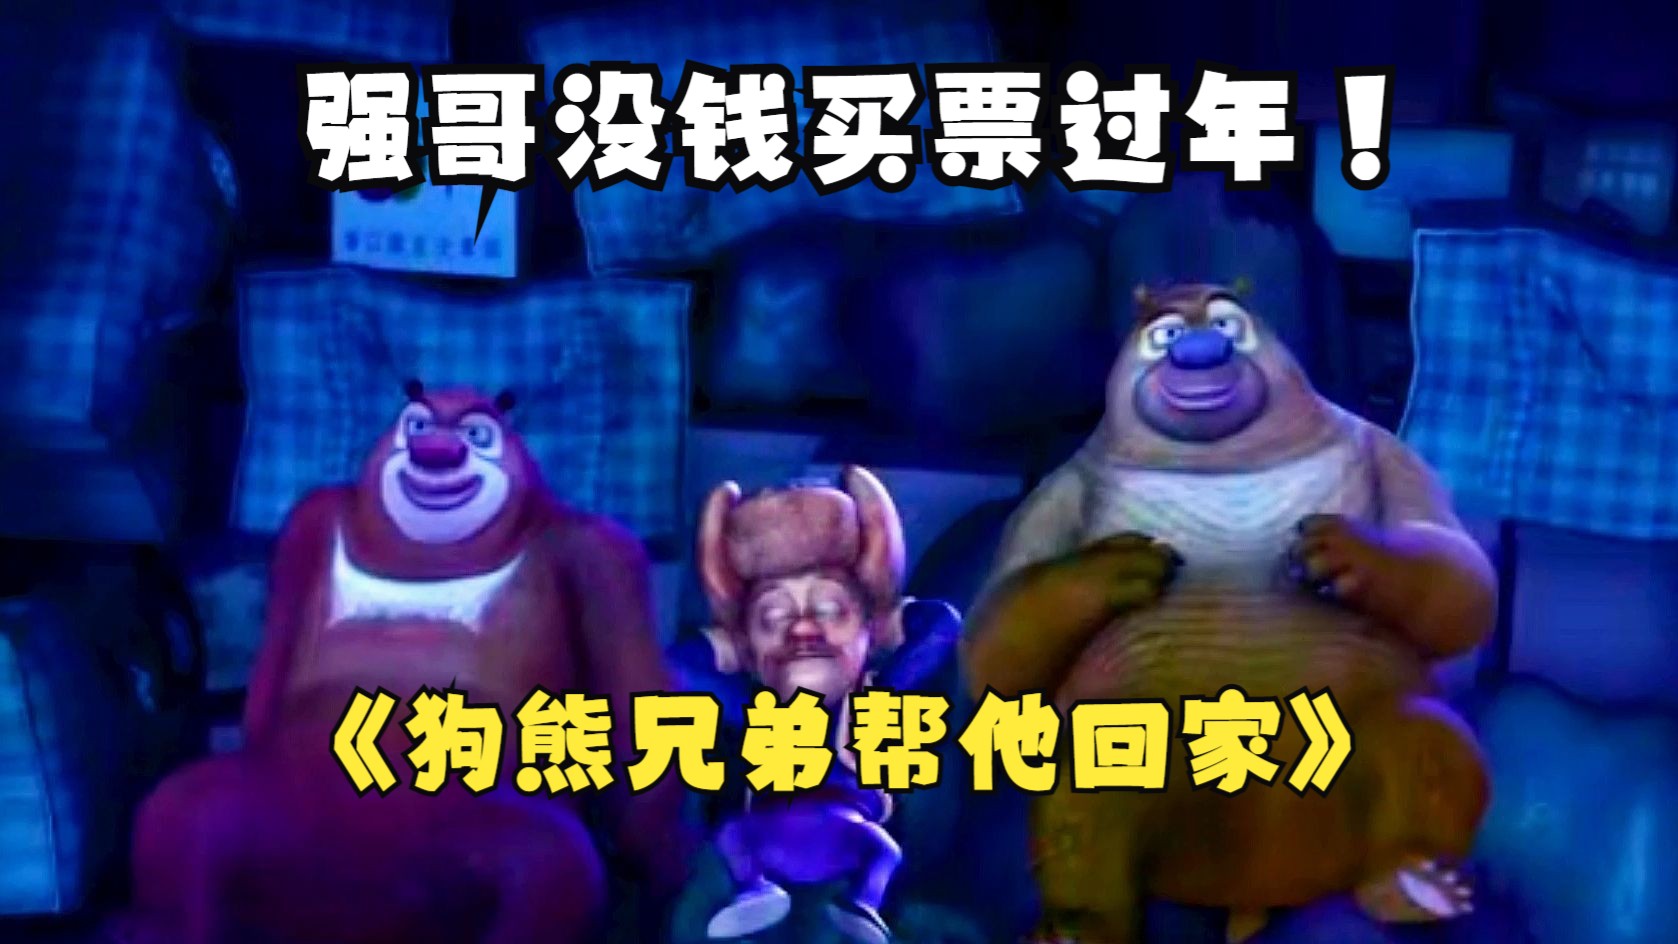 《熊出没·变形记》曝“过年啦”海报 2D/3D春节同步上映